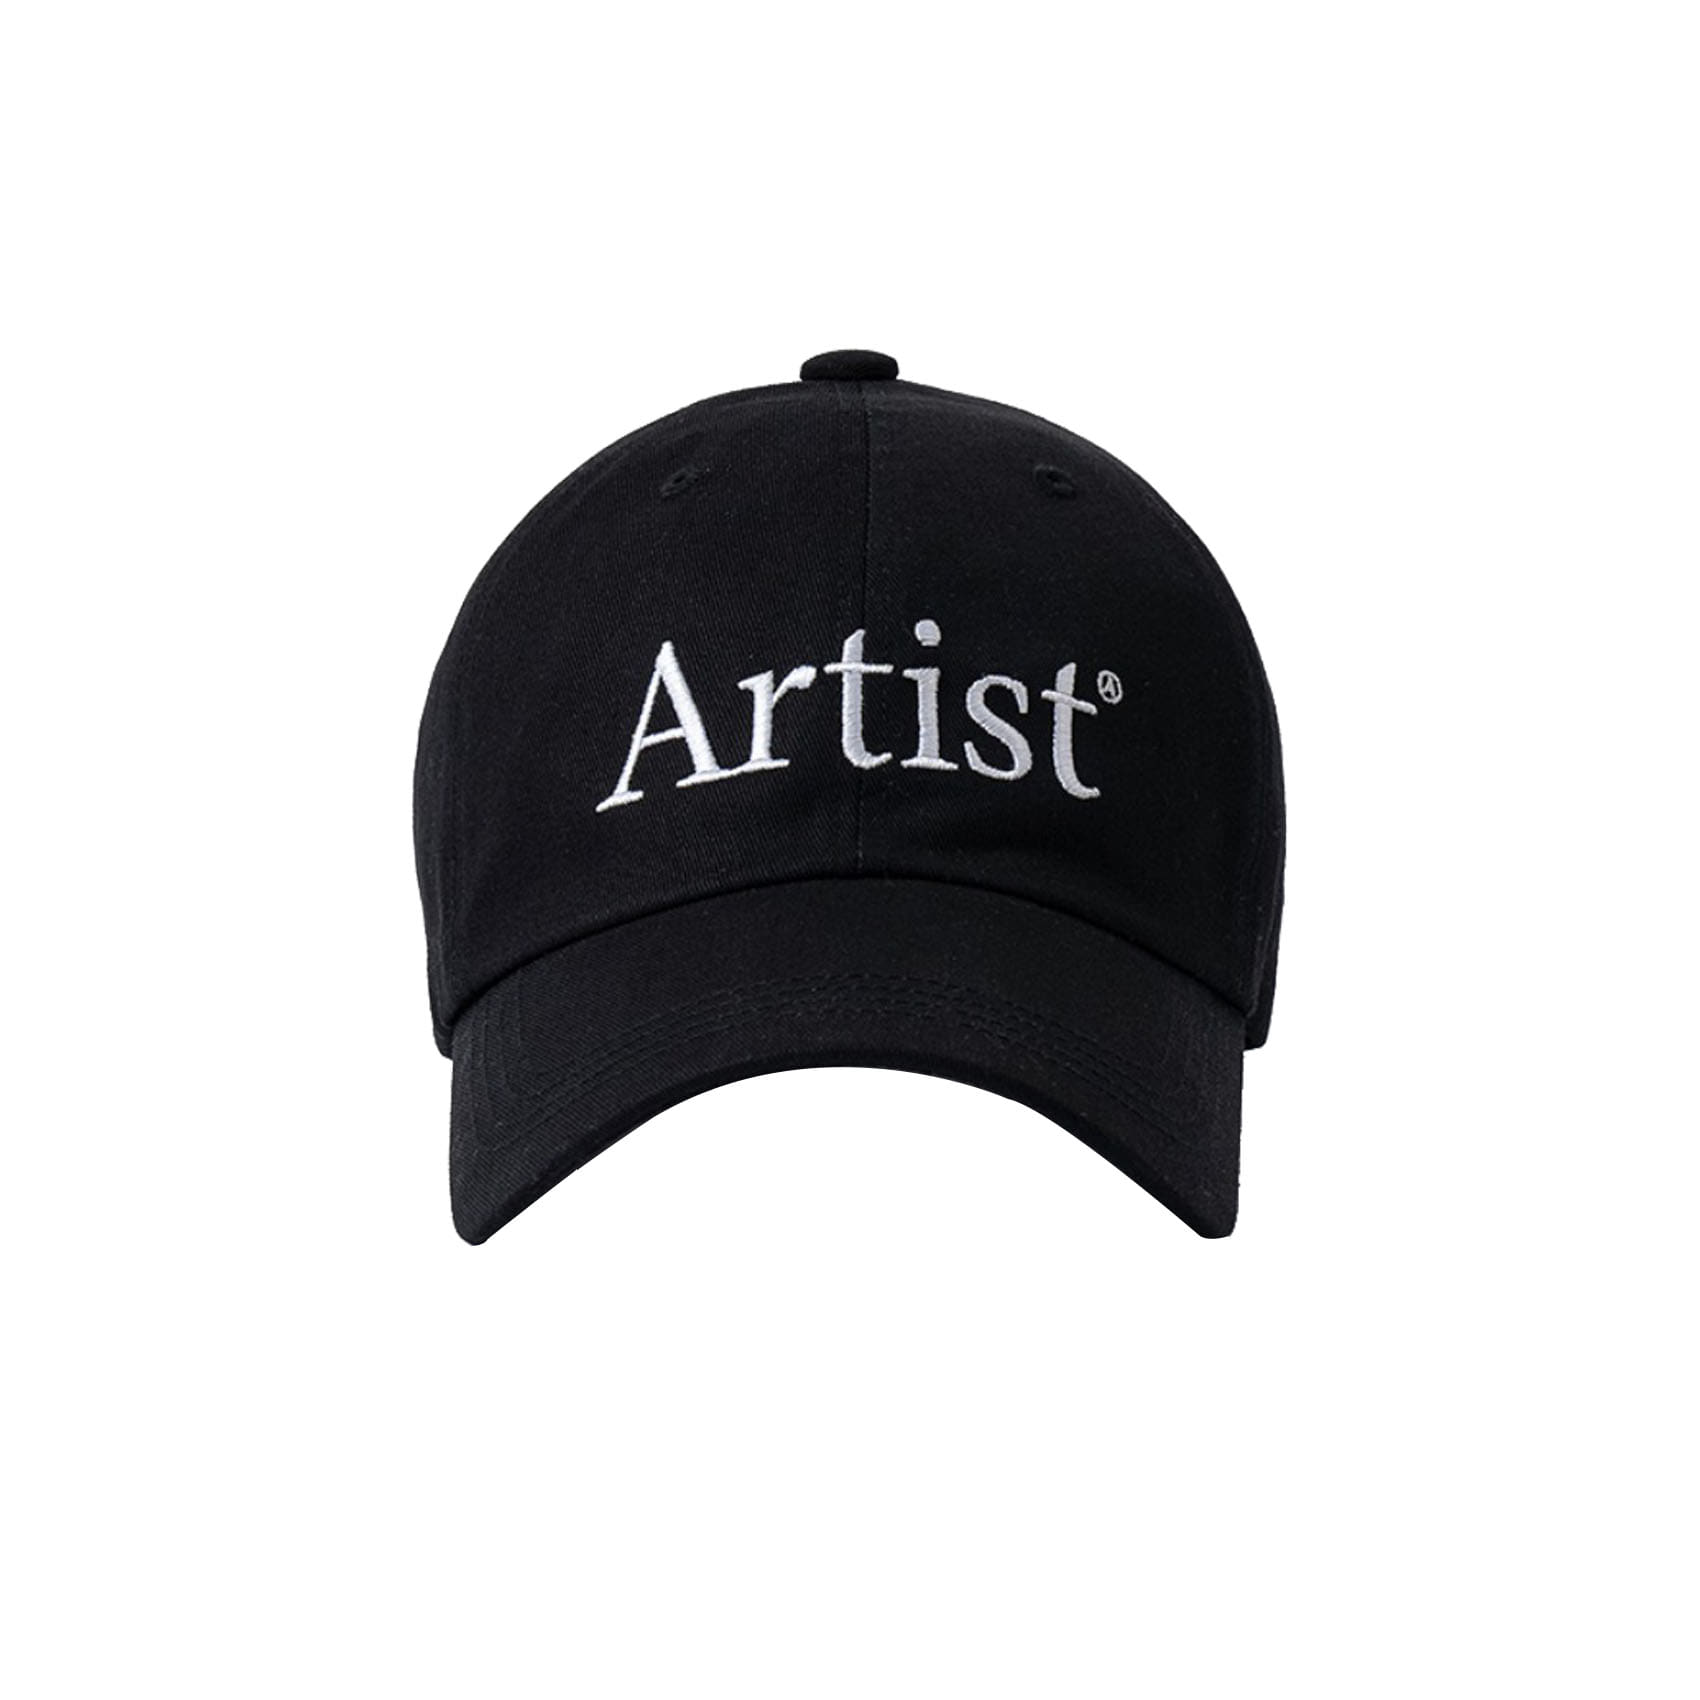 ARTIST CAP - BLACK